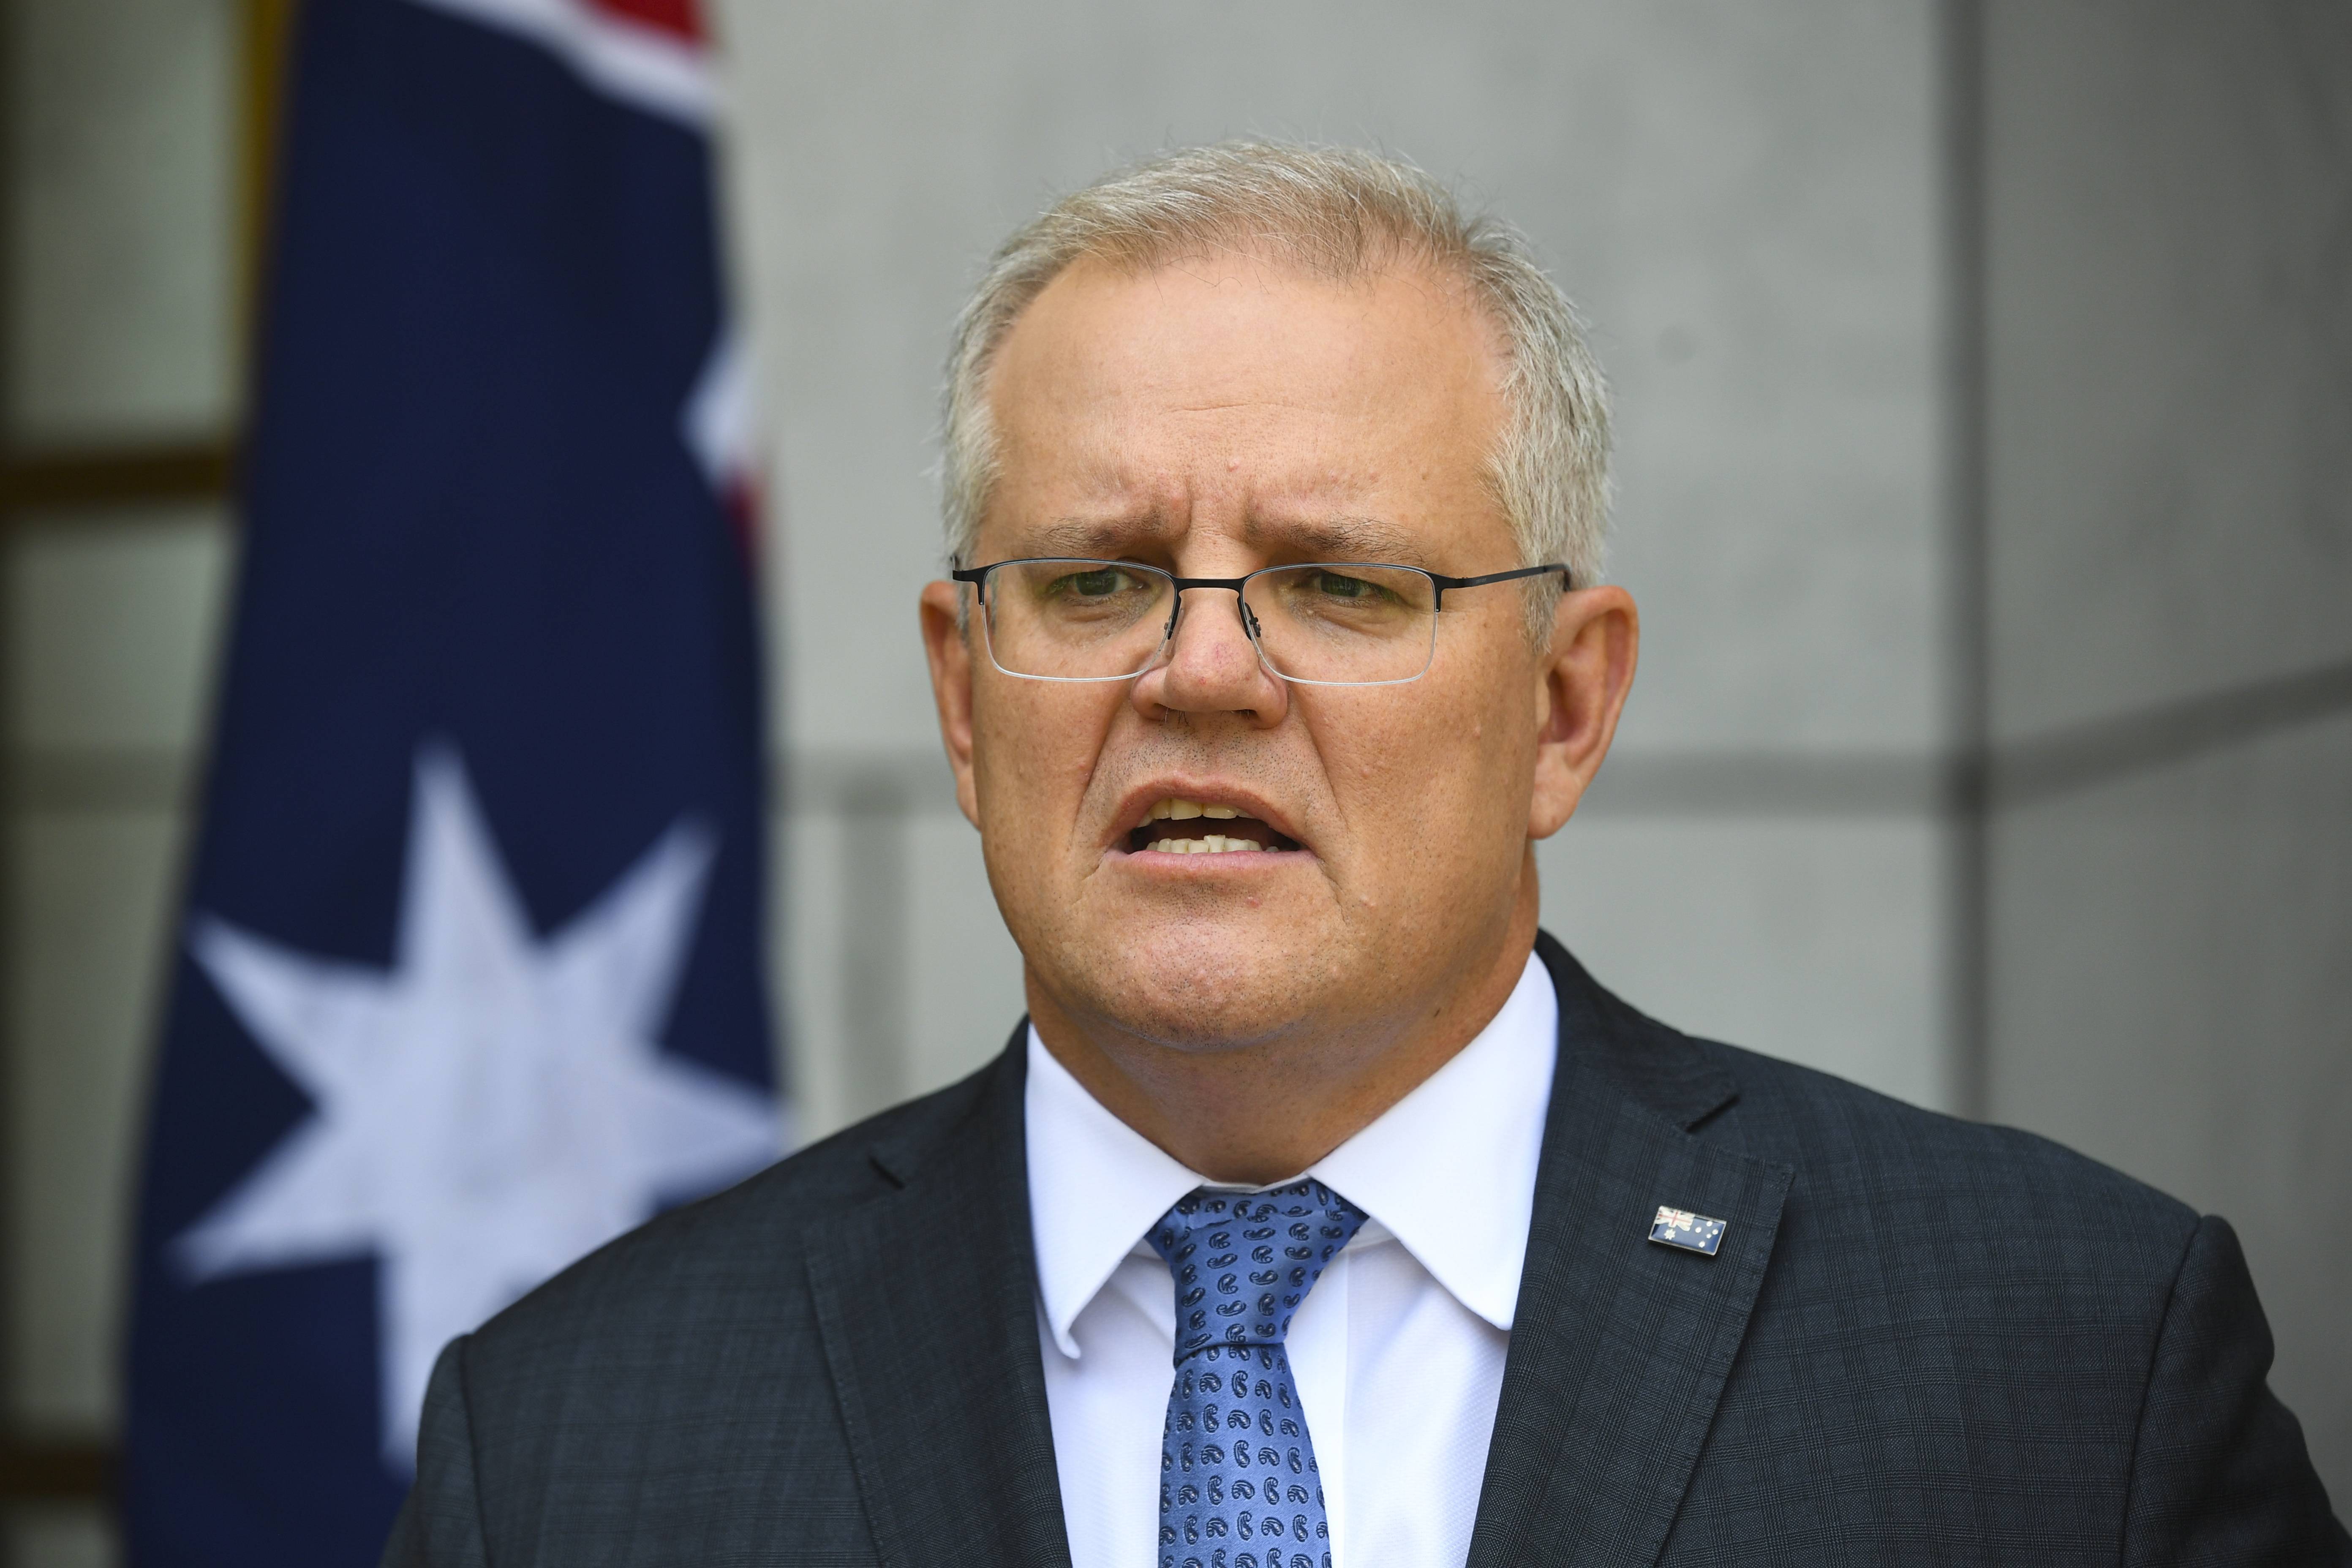 澳总理莫里森称在台湾问题上遵循"一国两制,外媒忙解释:表达有误